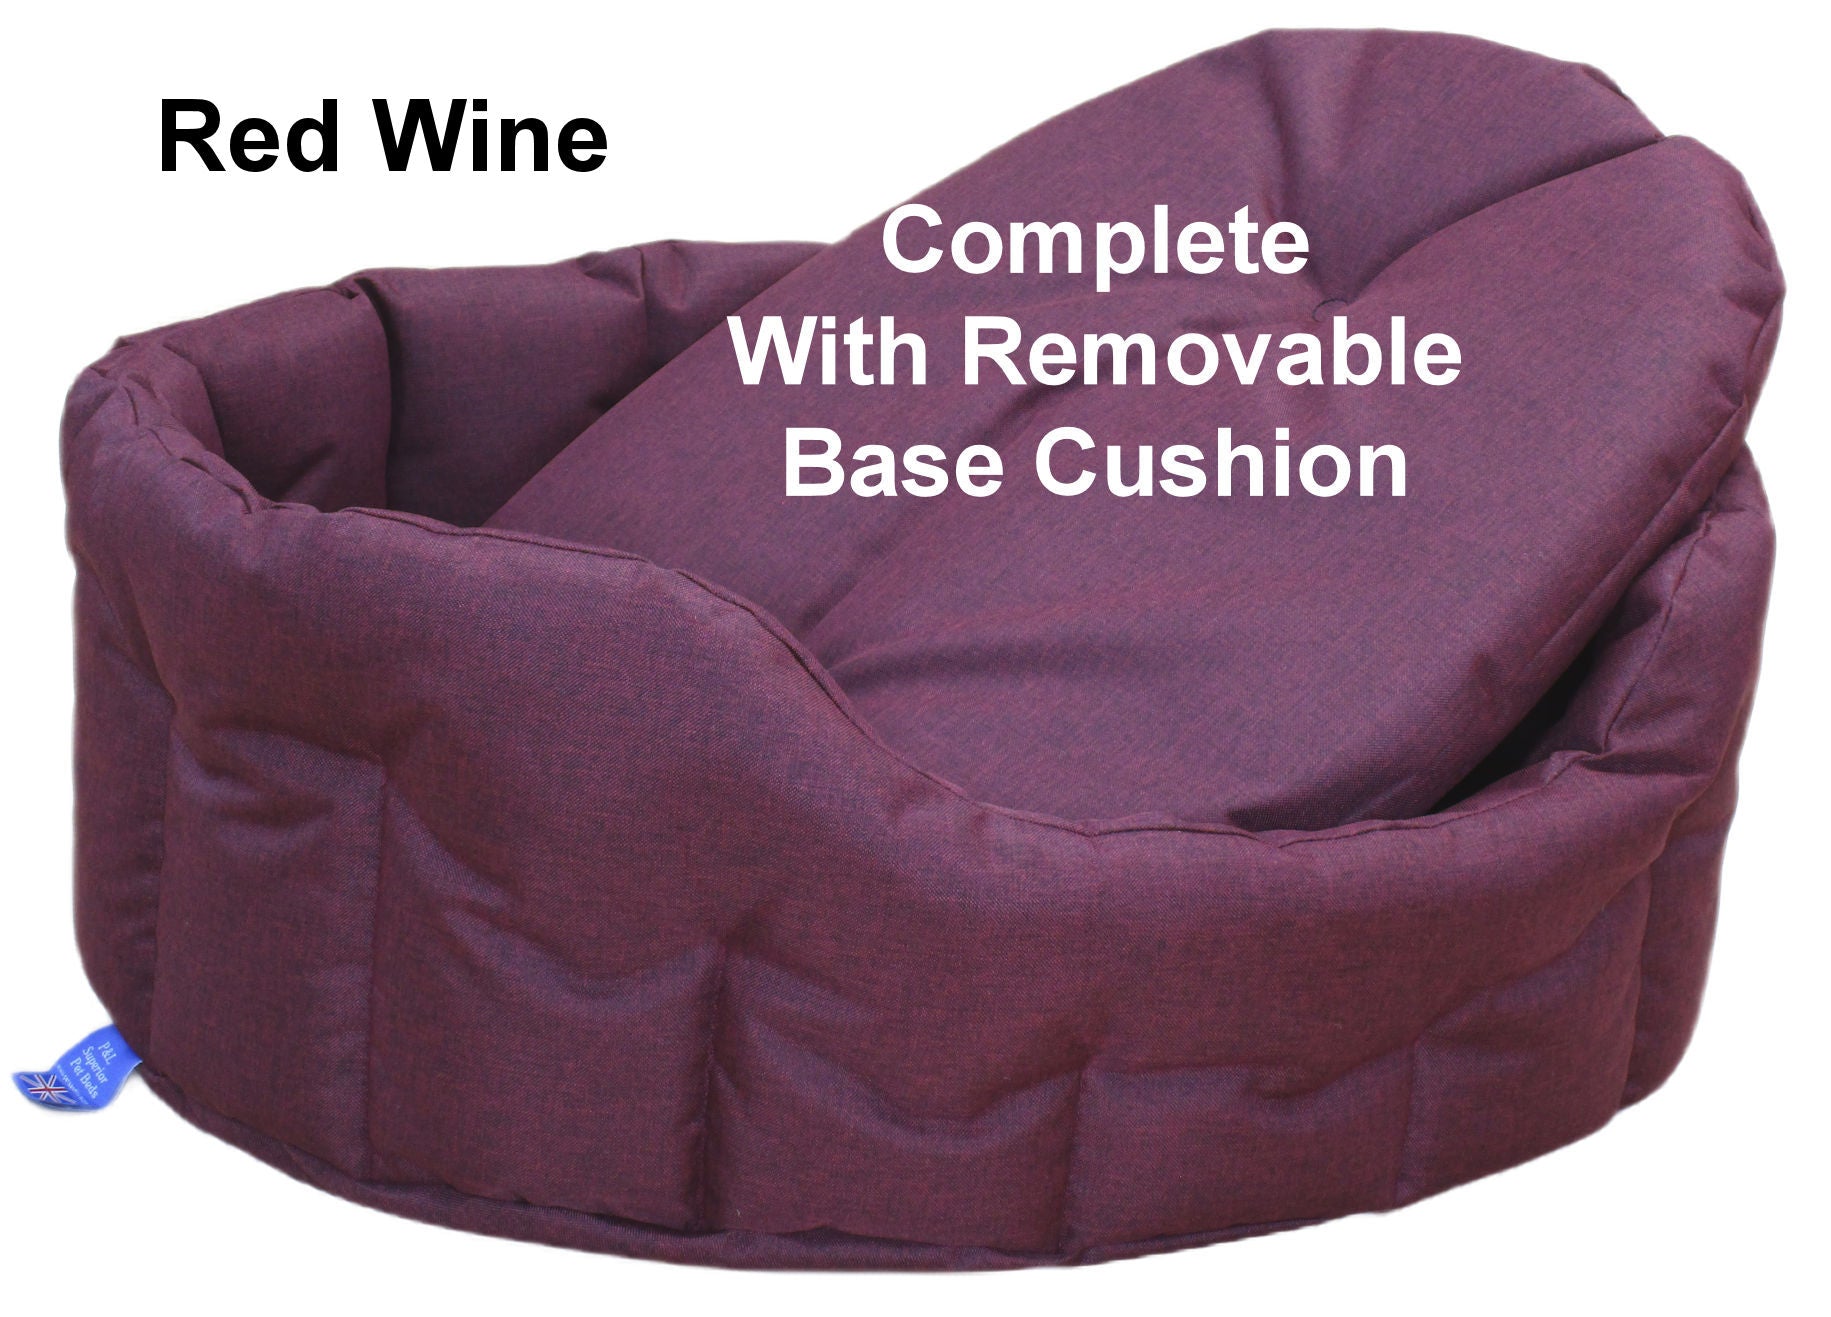 Dog Bed Chew Resistant Heavy Duty Tough Waterproof Purple 4 10cm 